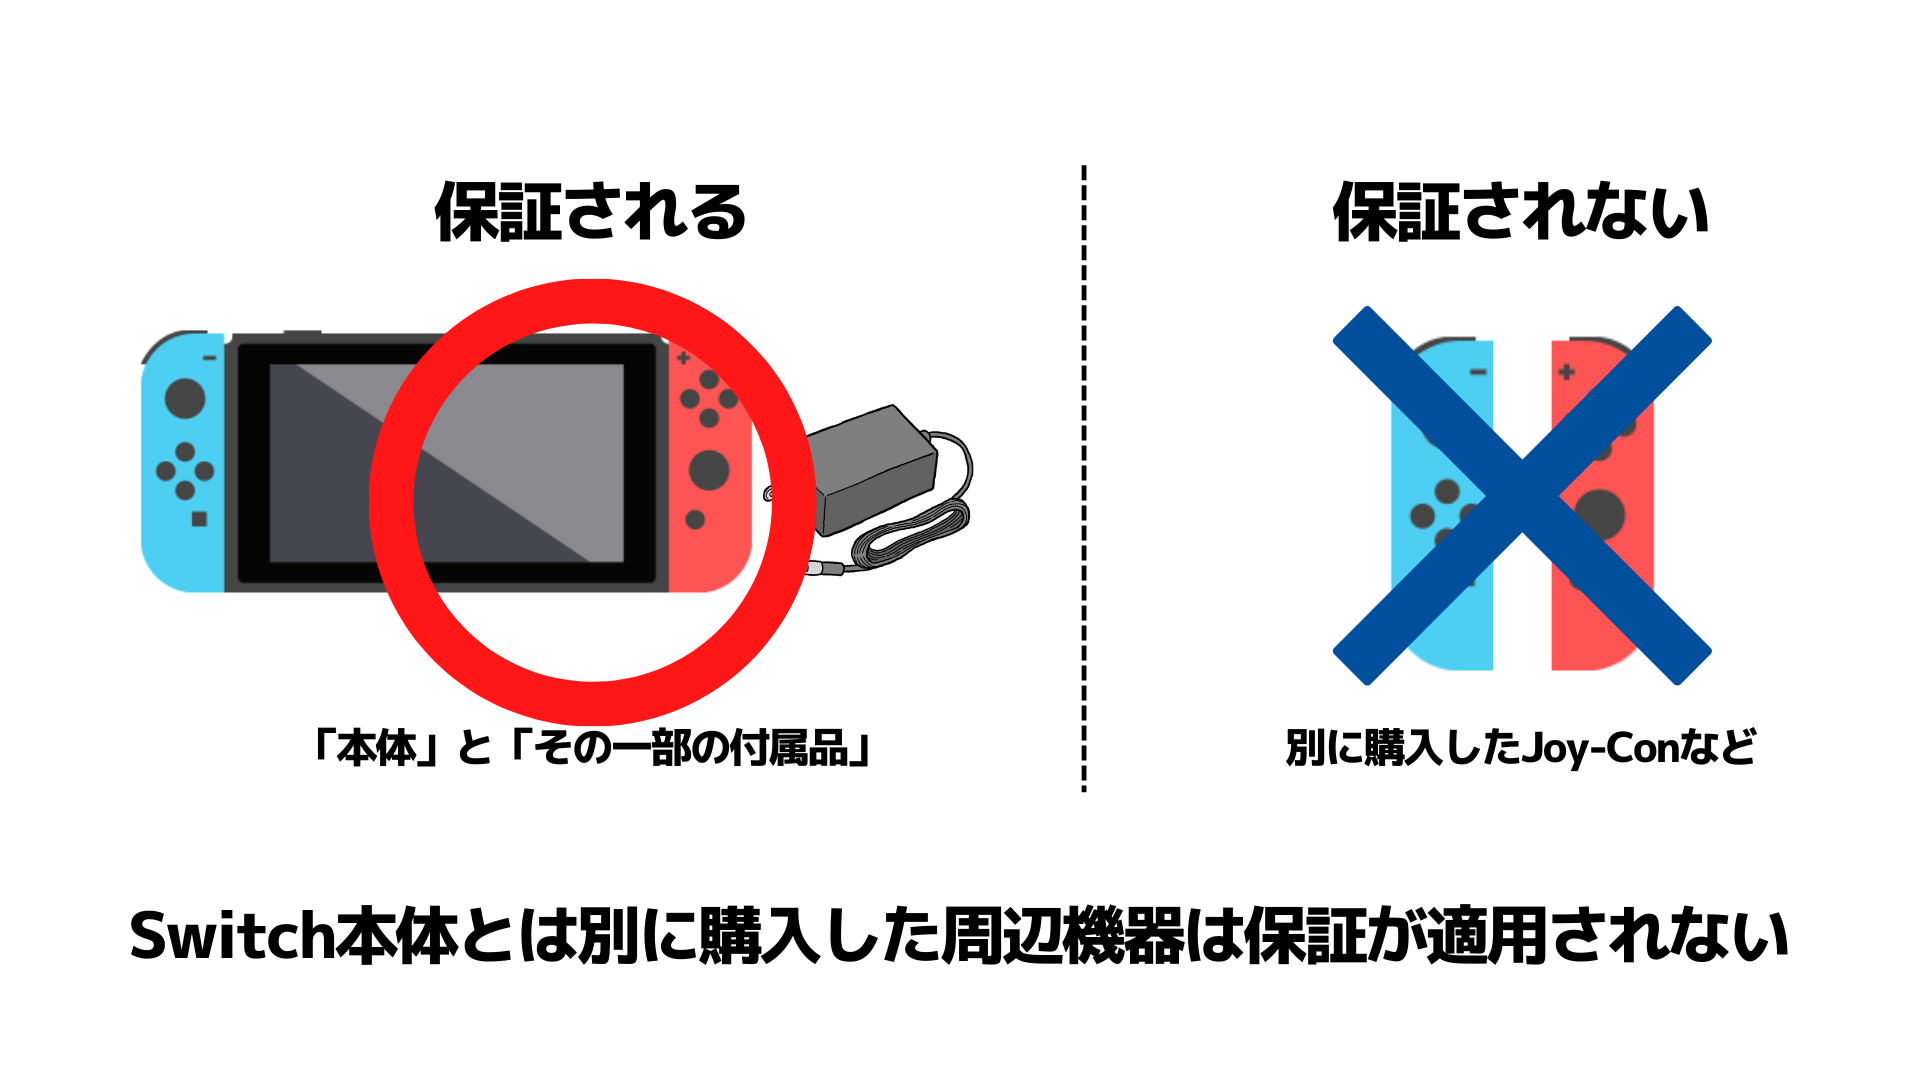 【期間限定】 - Switch Nintendo Nintendo 保証明細付き 新型 Switch 家庭用ゲーム機本体 - vesismin.com